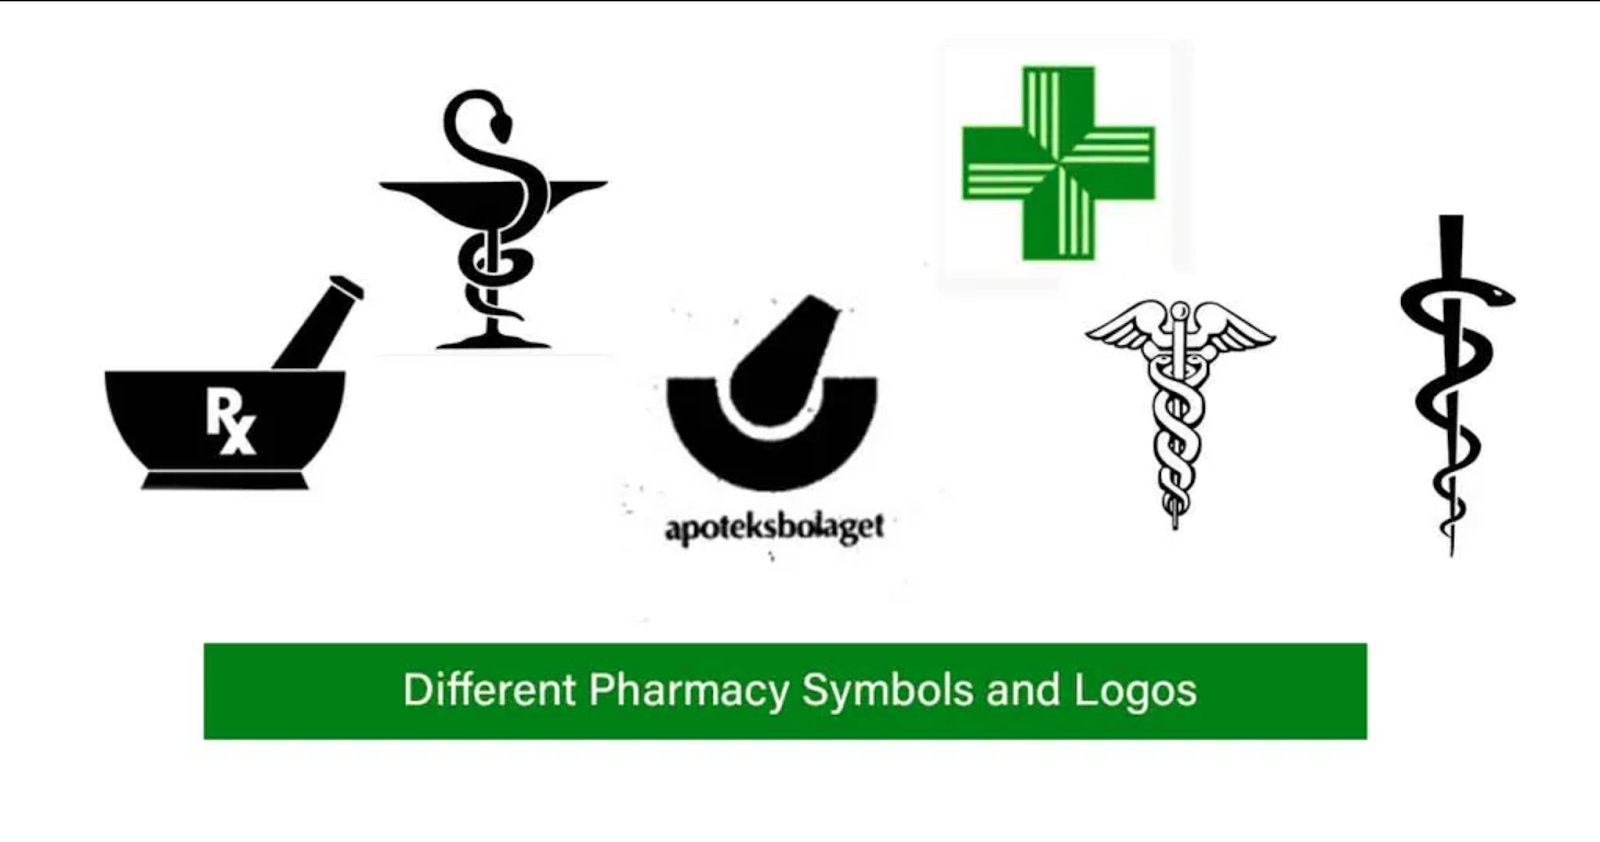 símbolo de farmácia: rx, taça de hegeya, almofariz com pilão, caduceu e serpente de Epidauro no cajado de Esculápio